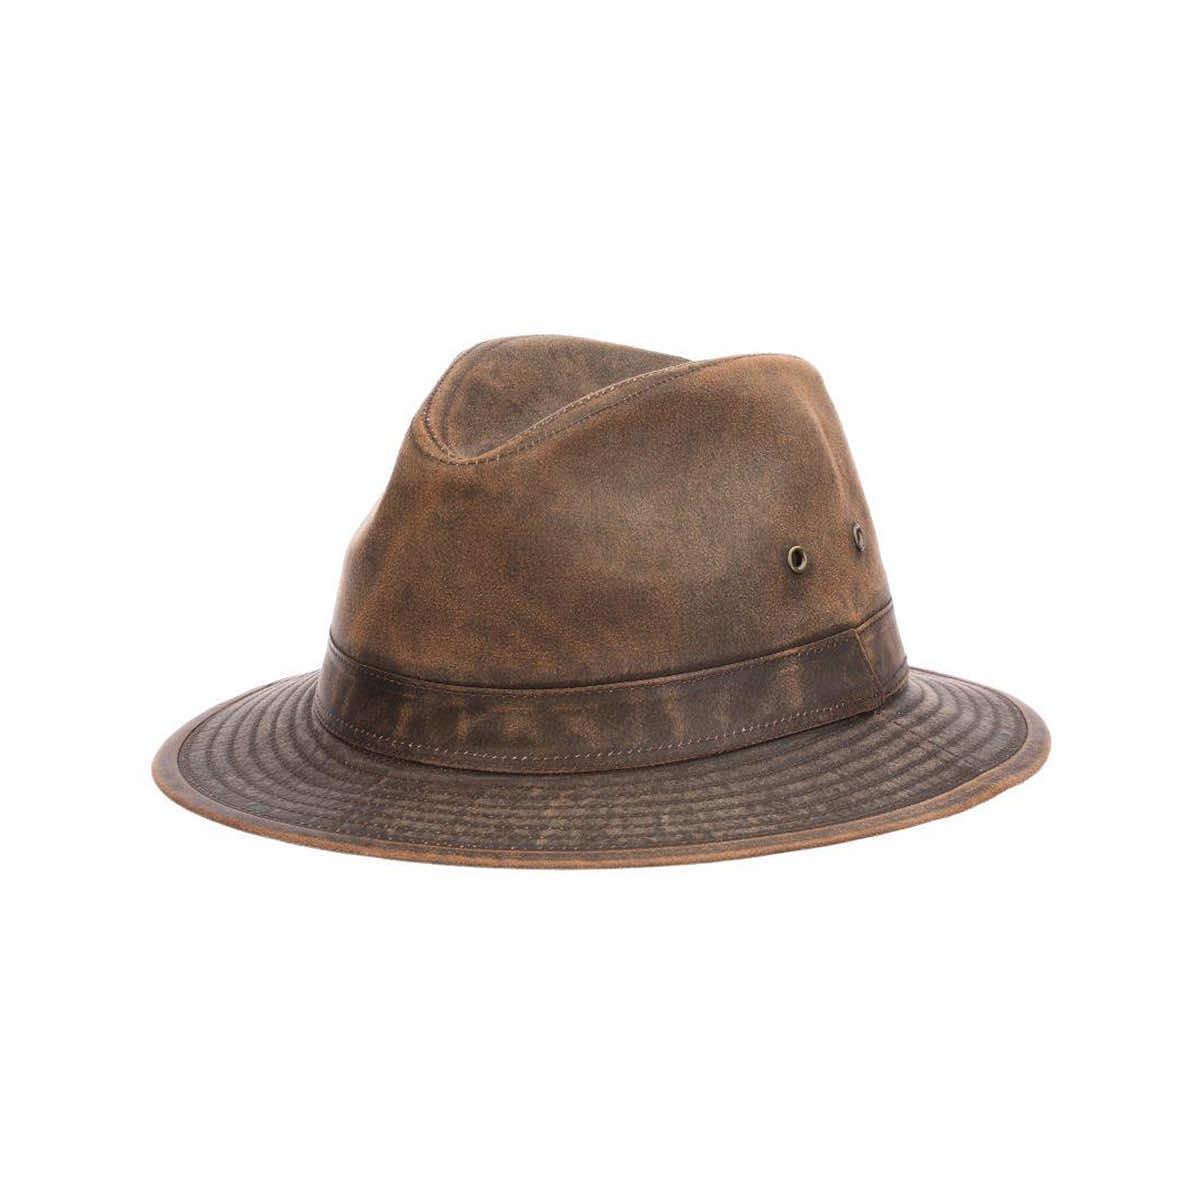  Melaleuca Weathered Safari Hat